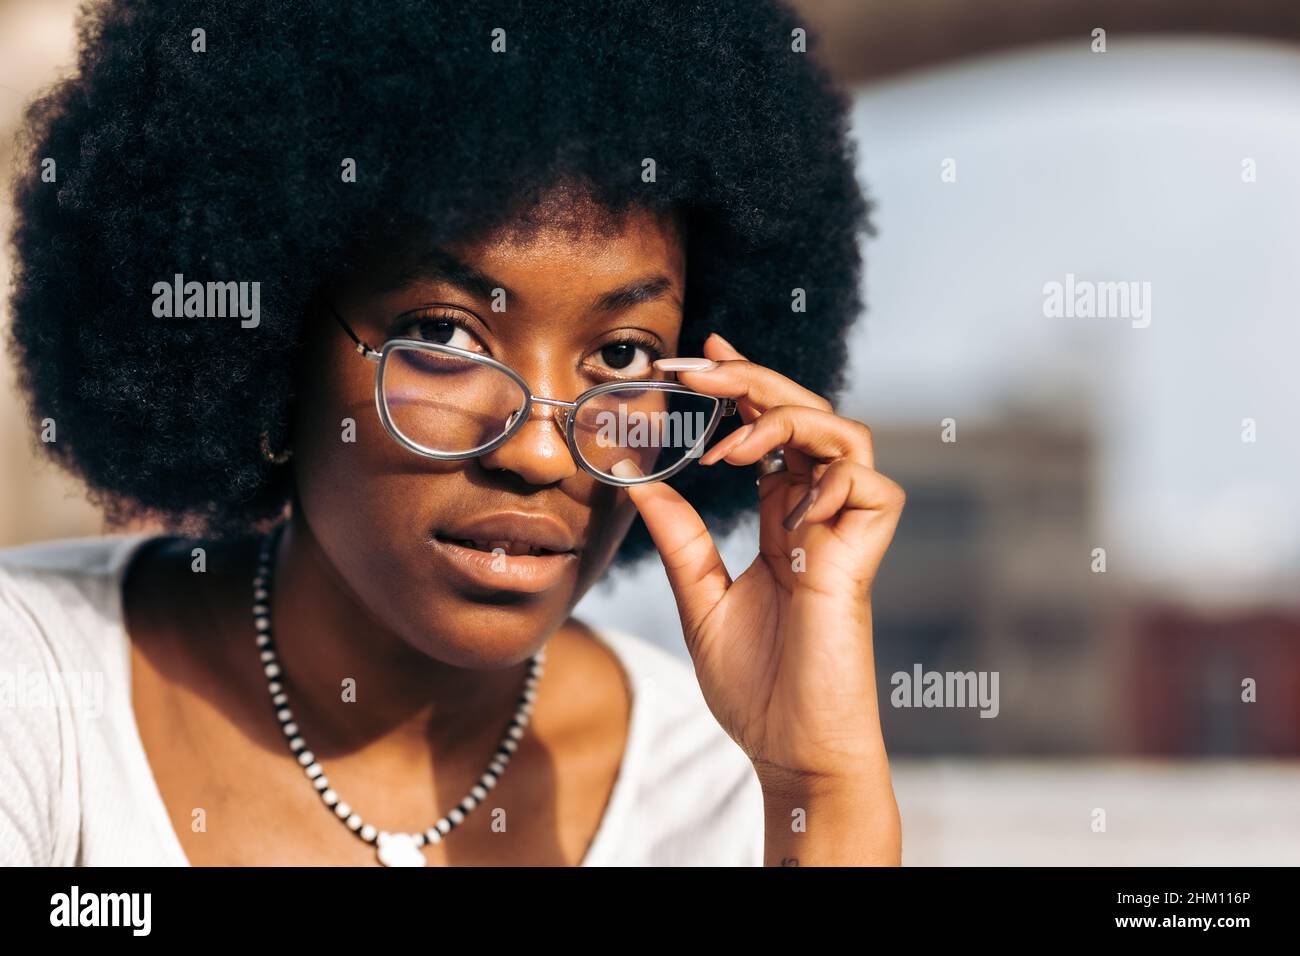 Portrait d'une femme adolescente noire portant des lunettes.Gros plan Banque D'Images